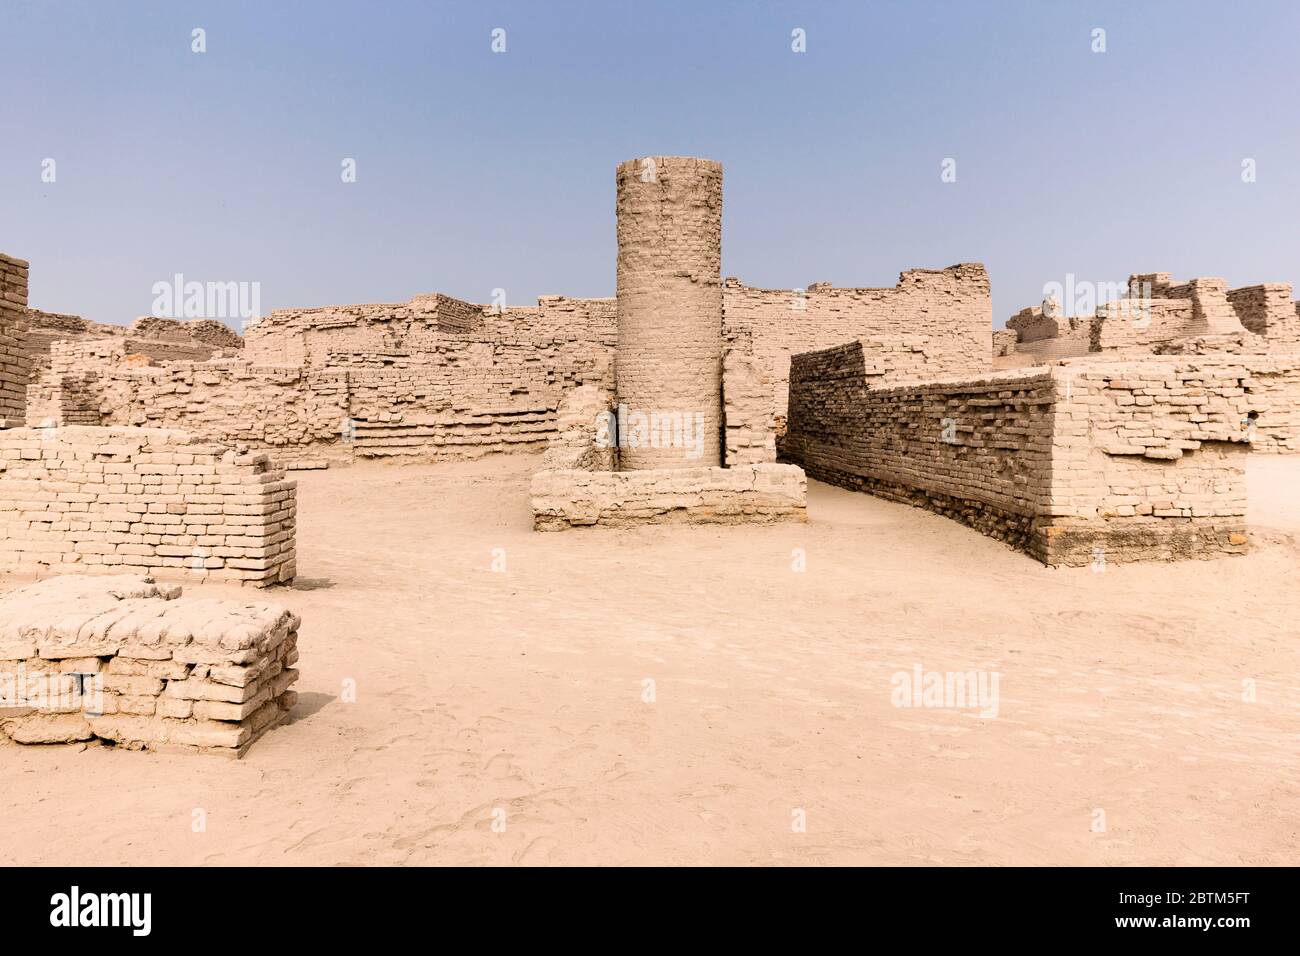 Mohenjo daro, puits, région DK, site archéologique de la civilisation de la vallée de l'Indus, 2500 BCE, district de Larkana, province de Sindh, Pakistan, Asie du Sud, Asie Banque D'Images